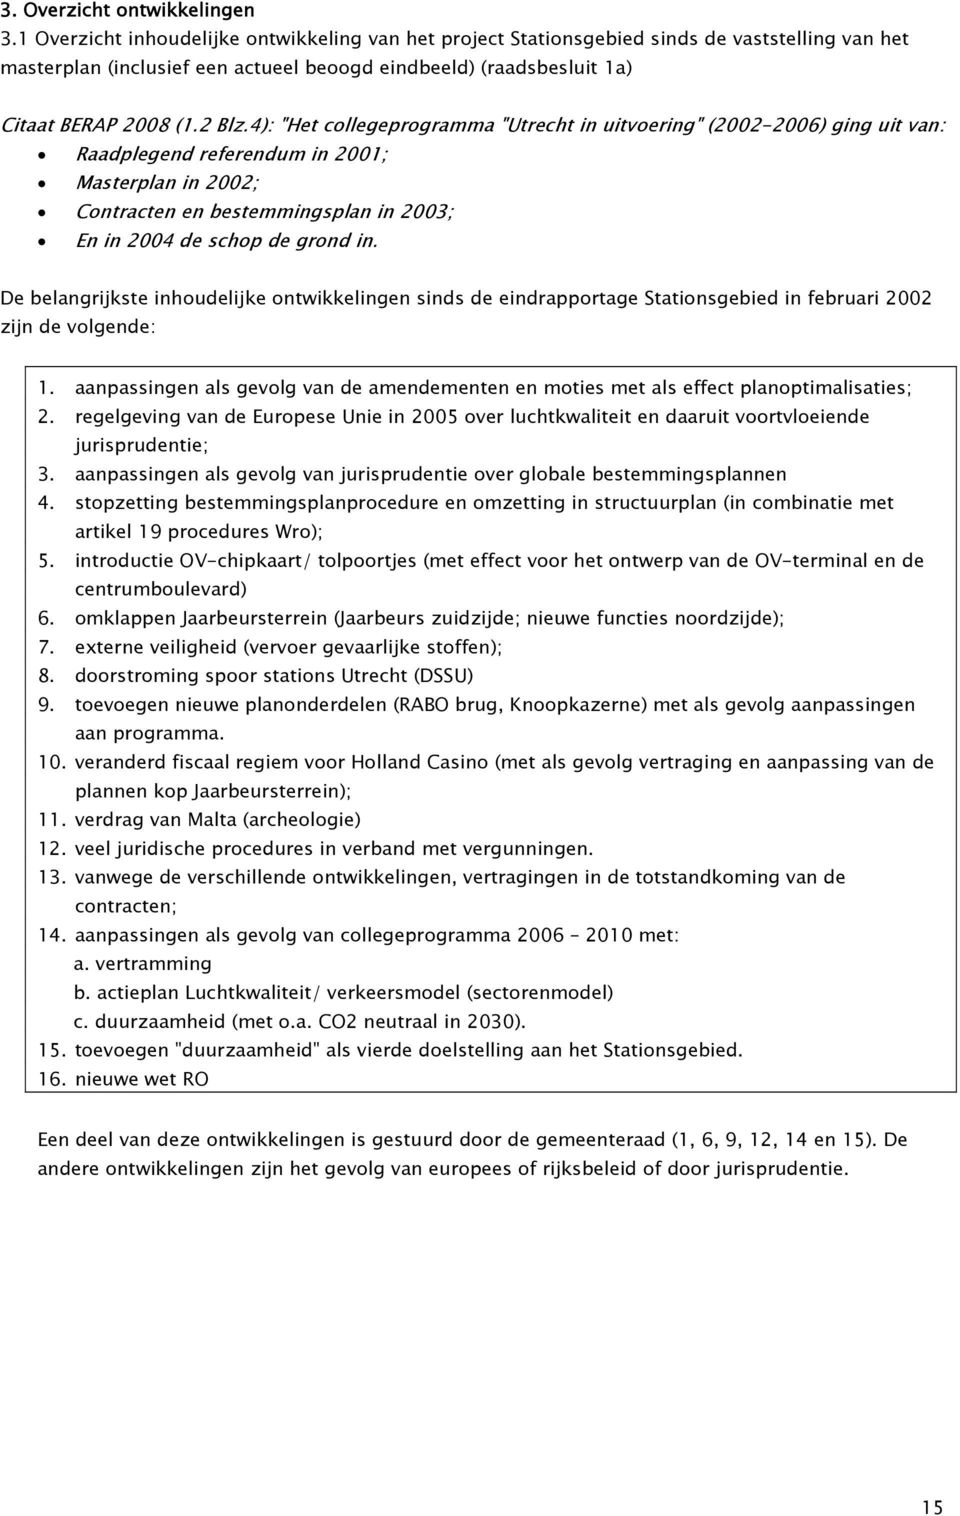 4): "Het collegeprogramma "Utrecht in uitvoering" (2002-2006) ging uit van: Raadplegend referendum in 2001; Masterplan in 2002; Contracten en bestemmingsplan in 2003; En in 2004 de schop de grond in.